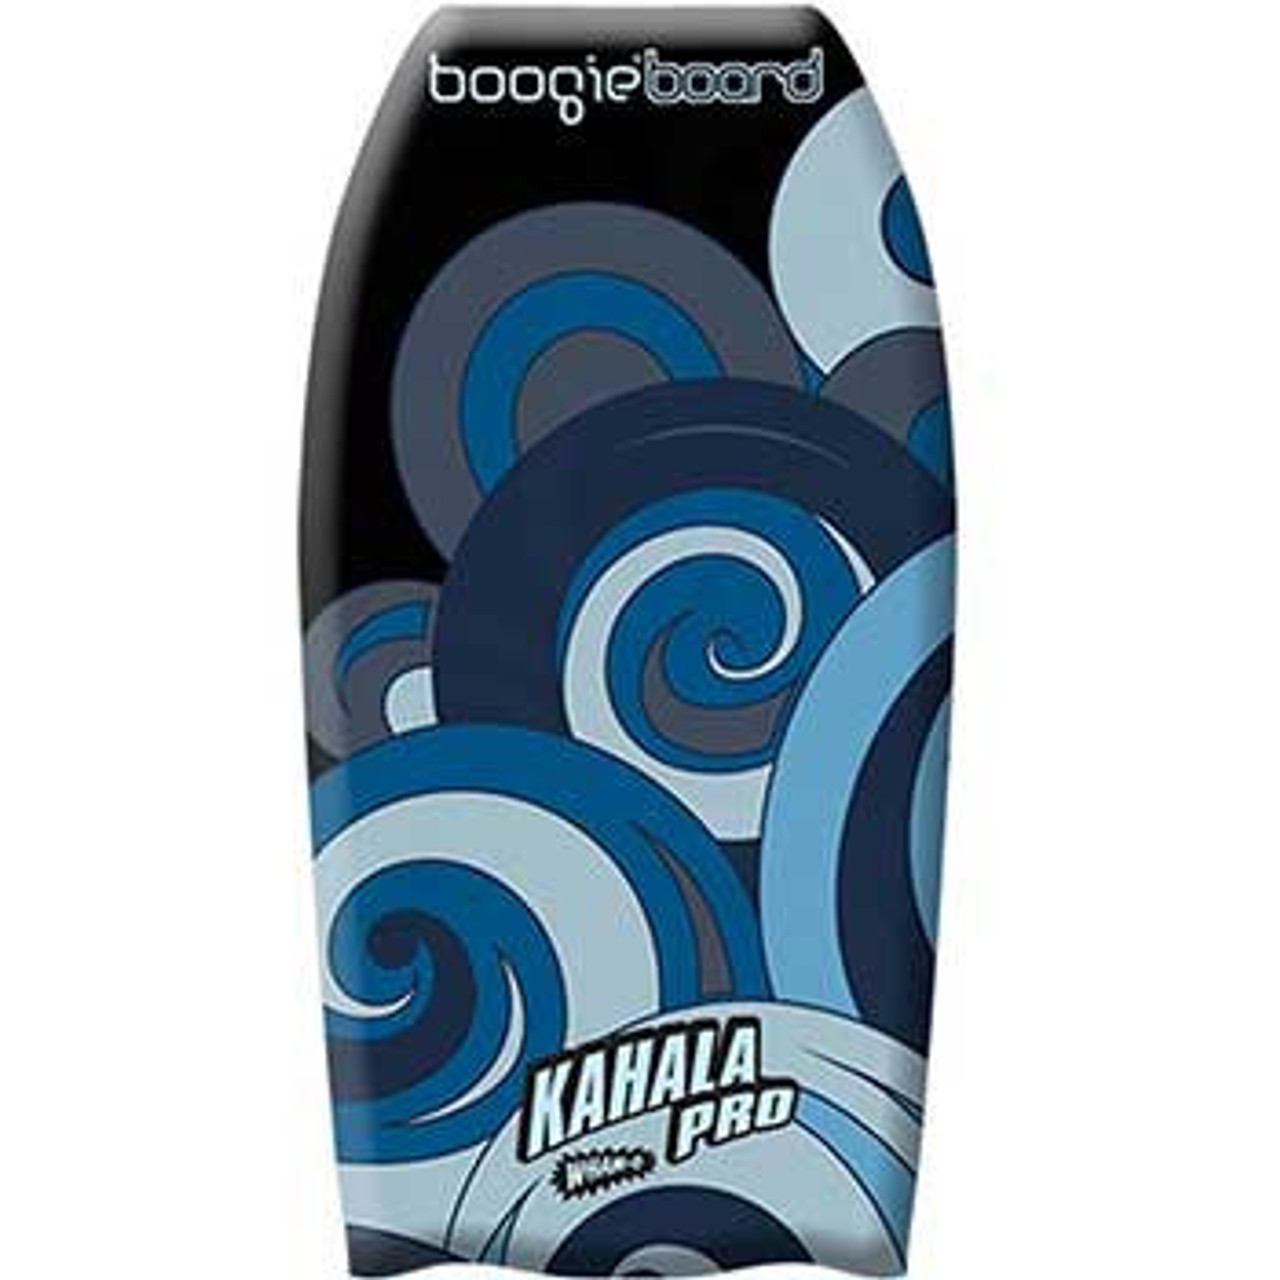 Wham-O Boogie Board 36" Kahala Pro